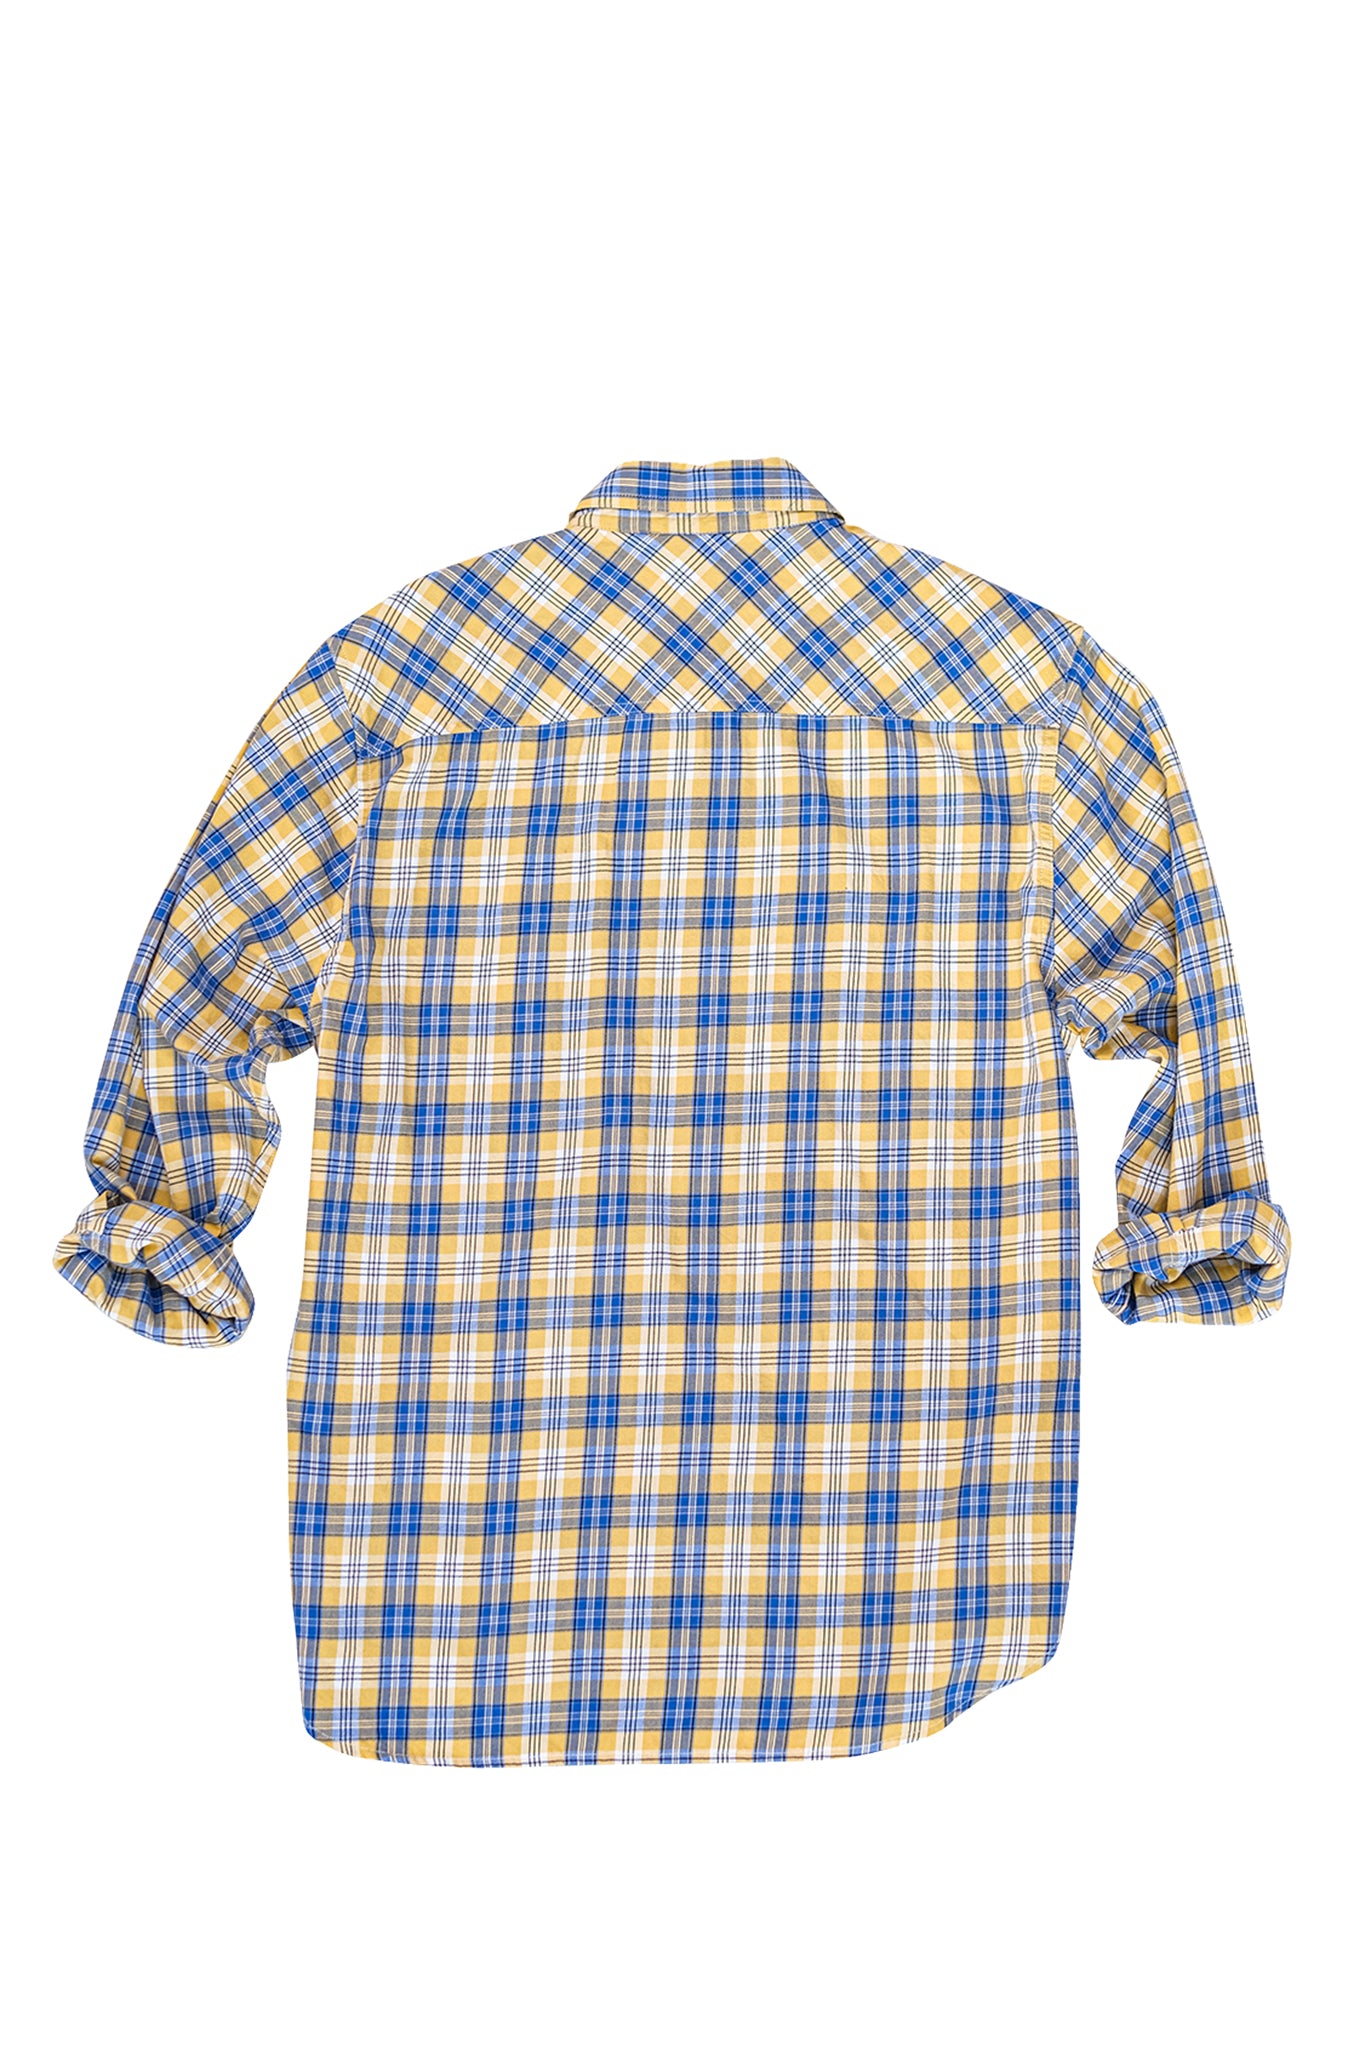 Palen Lightweight Flannel Shirt